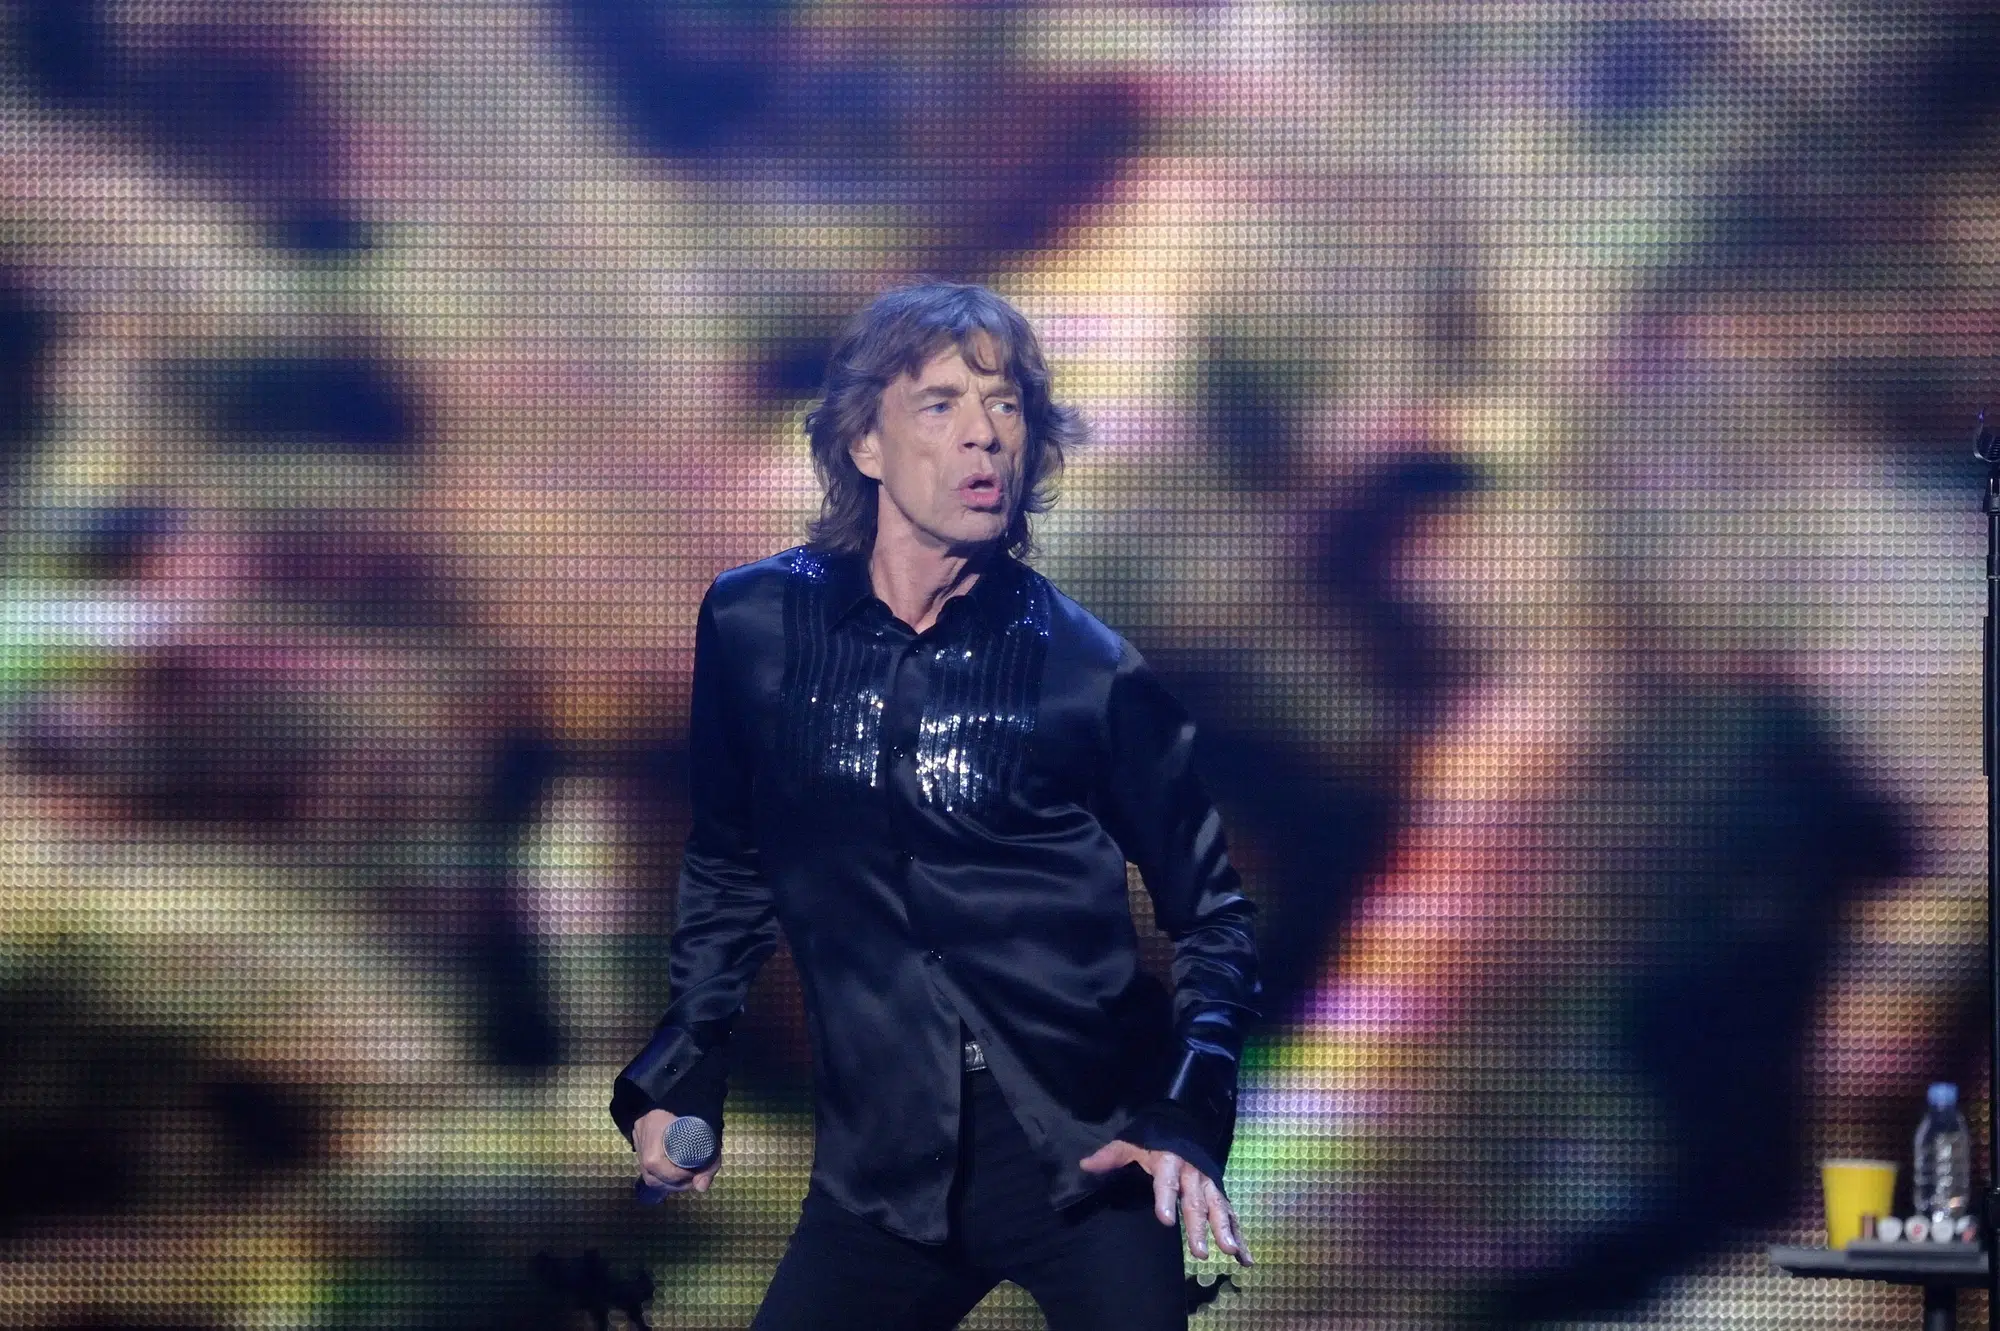 Il robot Spot imita le movenze di Mick Jagger dei Rolling Stones thumbnail